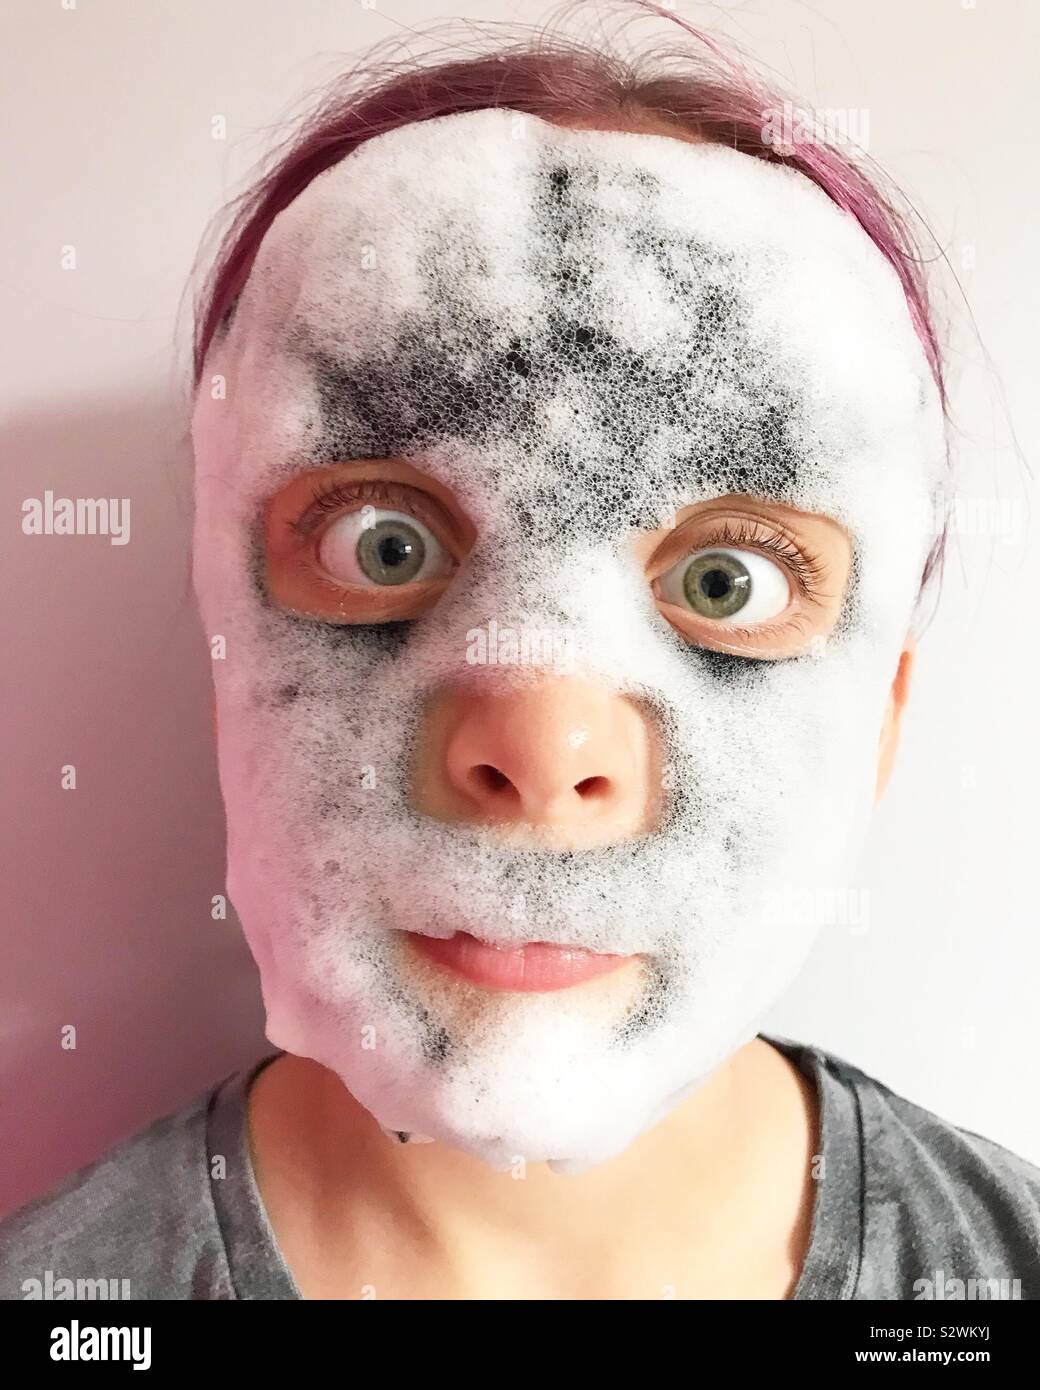 tøve Brøl Ray Bubble face mask on a girl Stock Photo - Alamy